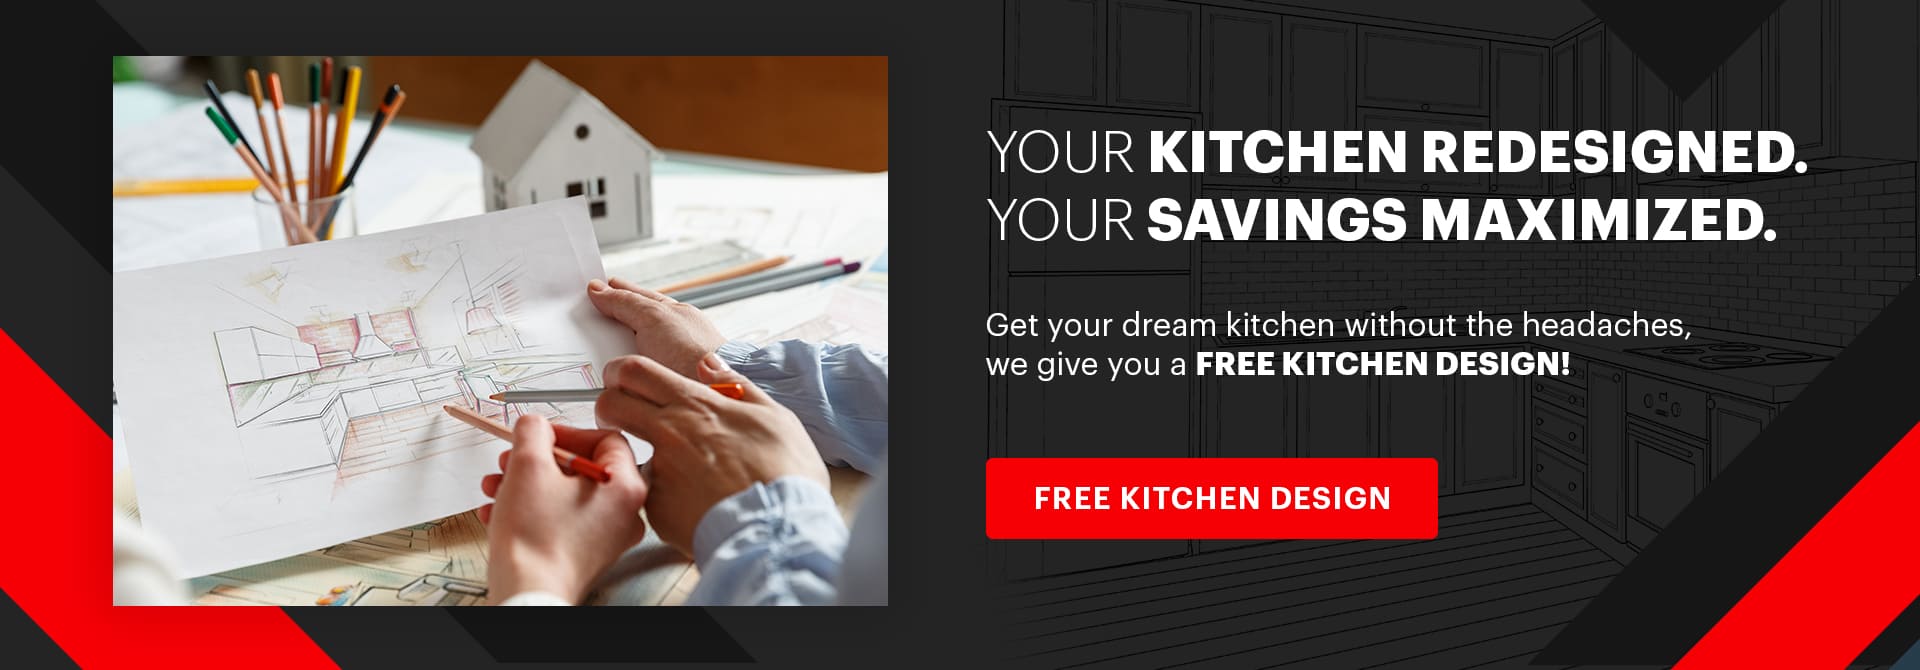 Free-Kitchen-Design